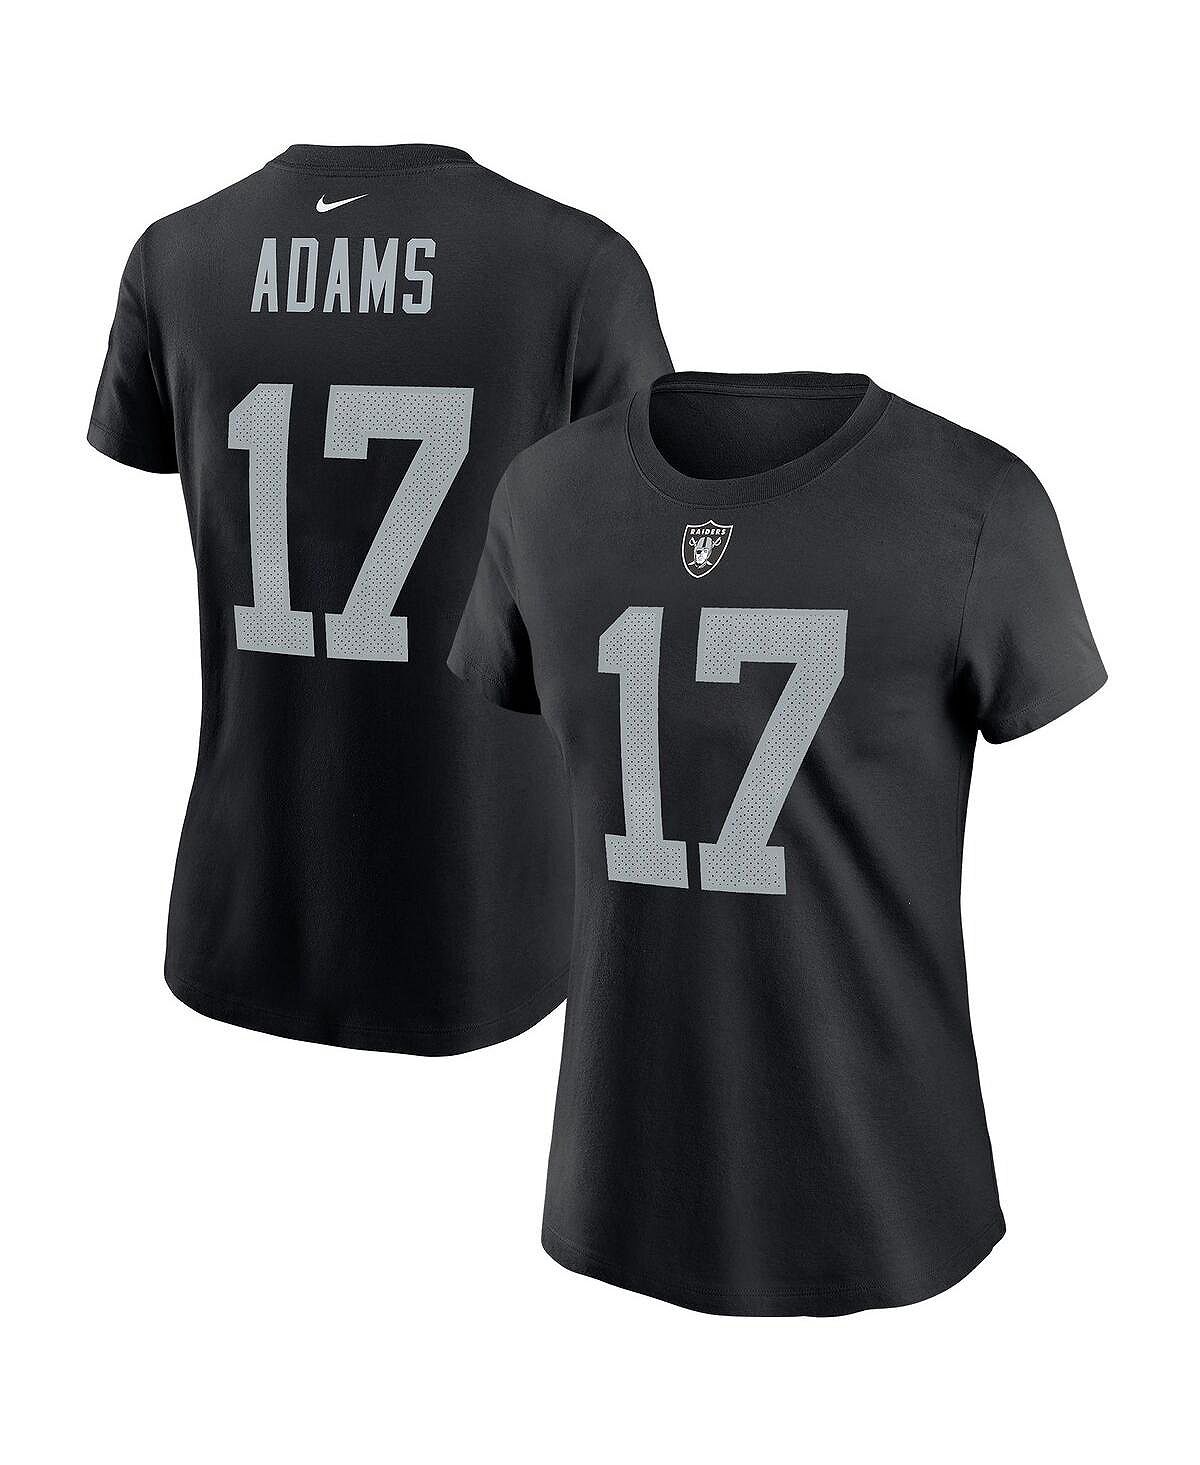 Женская черная футболка с именем и номером игрока Davante Adams Las Vegas Raiders Nike, черный